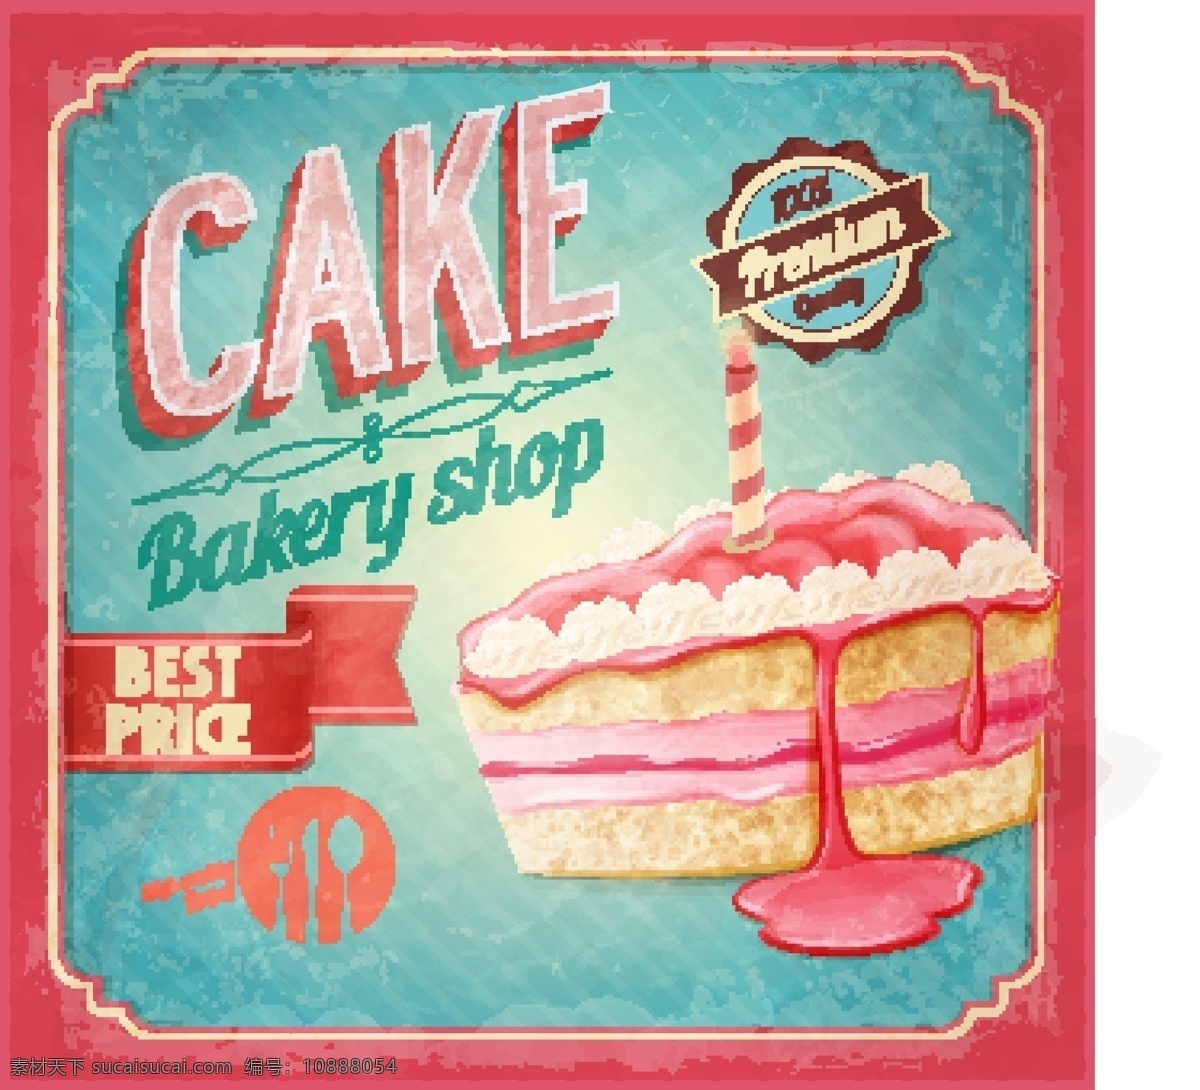 粉色 三角 蛋糕 面包店 海报 矢量 草莓 蜡烛 三角蛋糕 烘培 食品 甜品 果酱